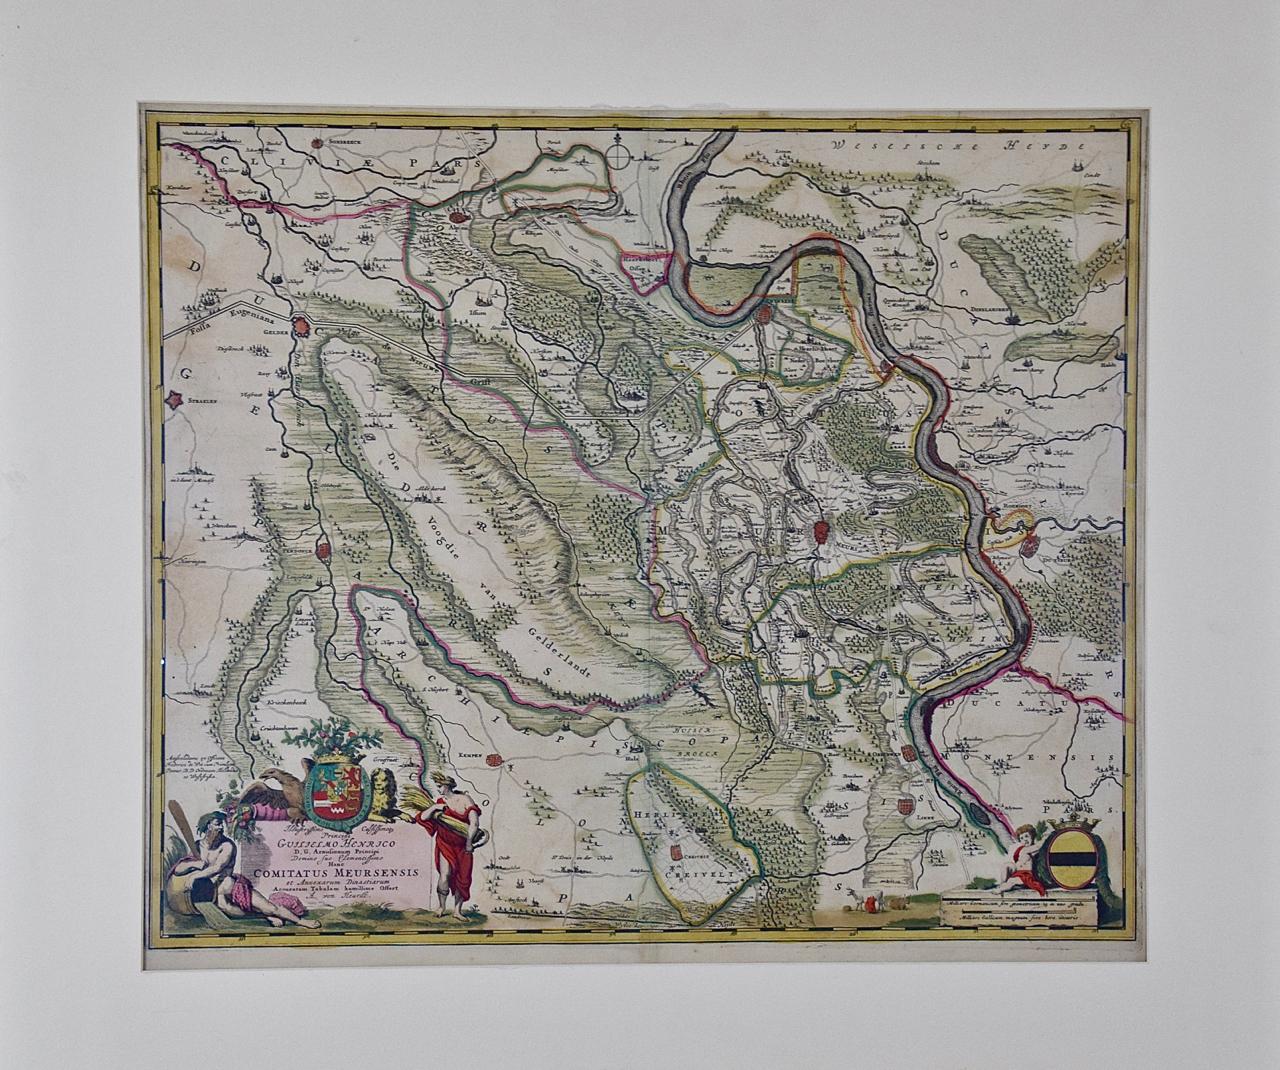 Diese originale handkolorierte Karte der Grafschaft Moers, Deutschland, aus dem 18. Jahrhundert mit dem Titel 